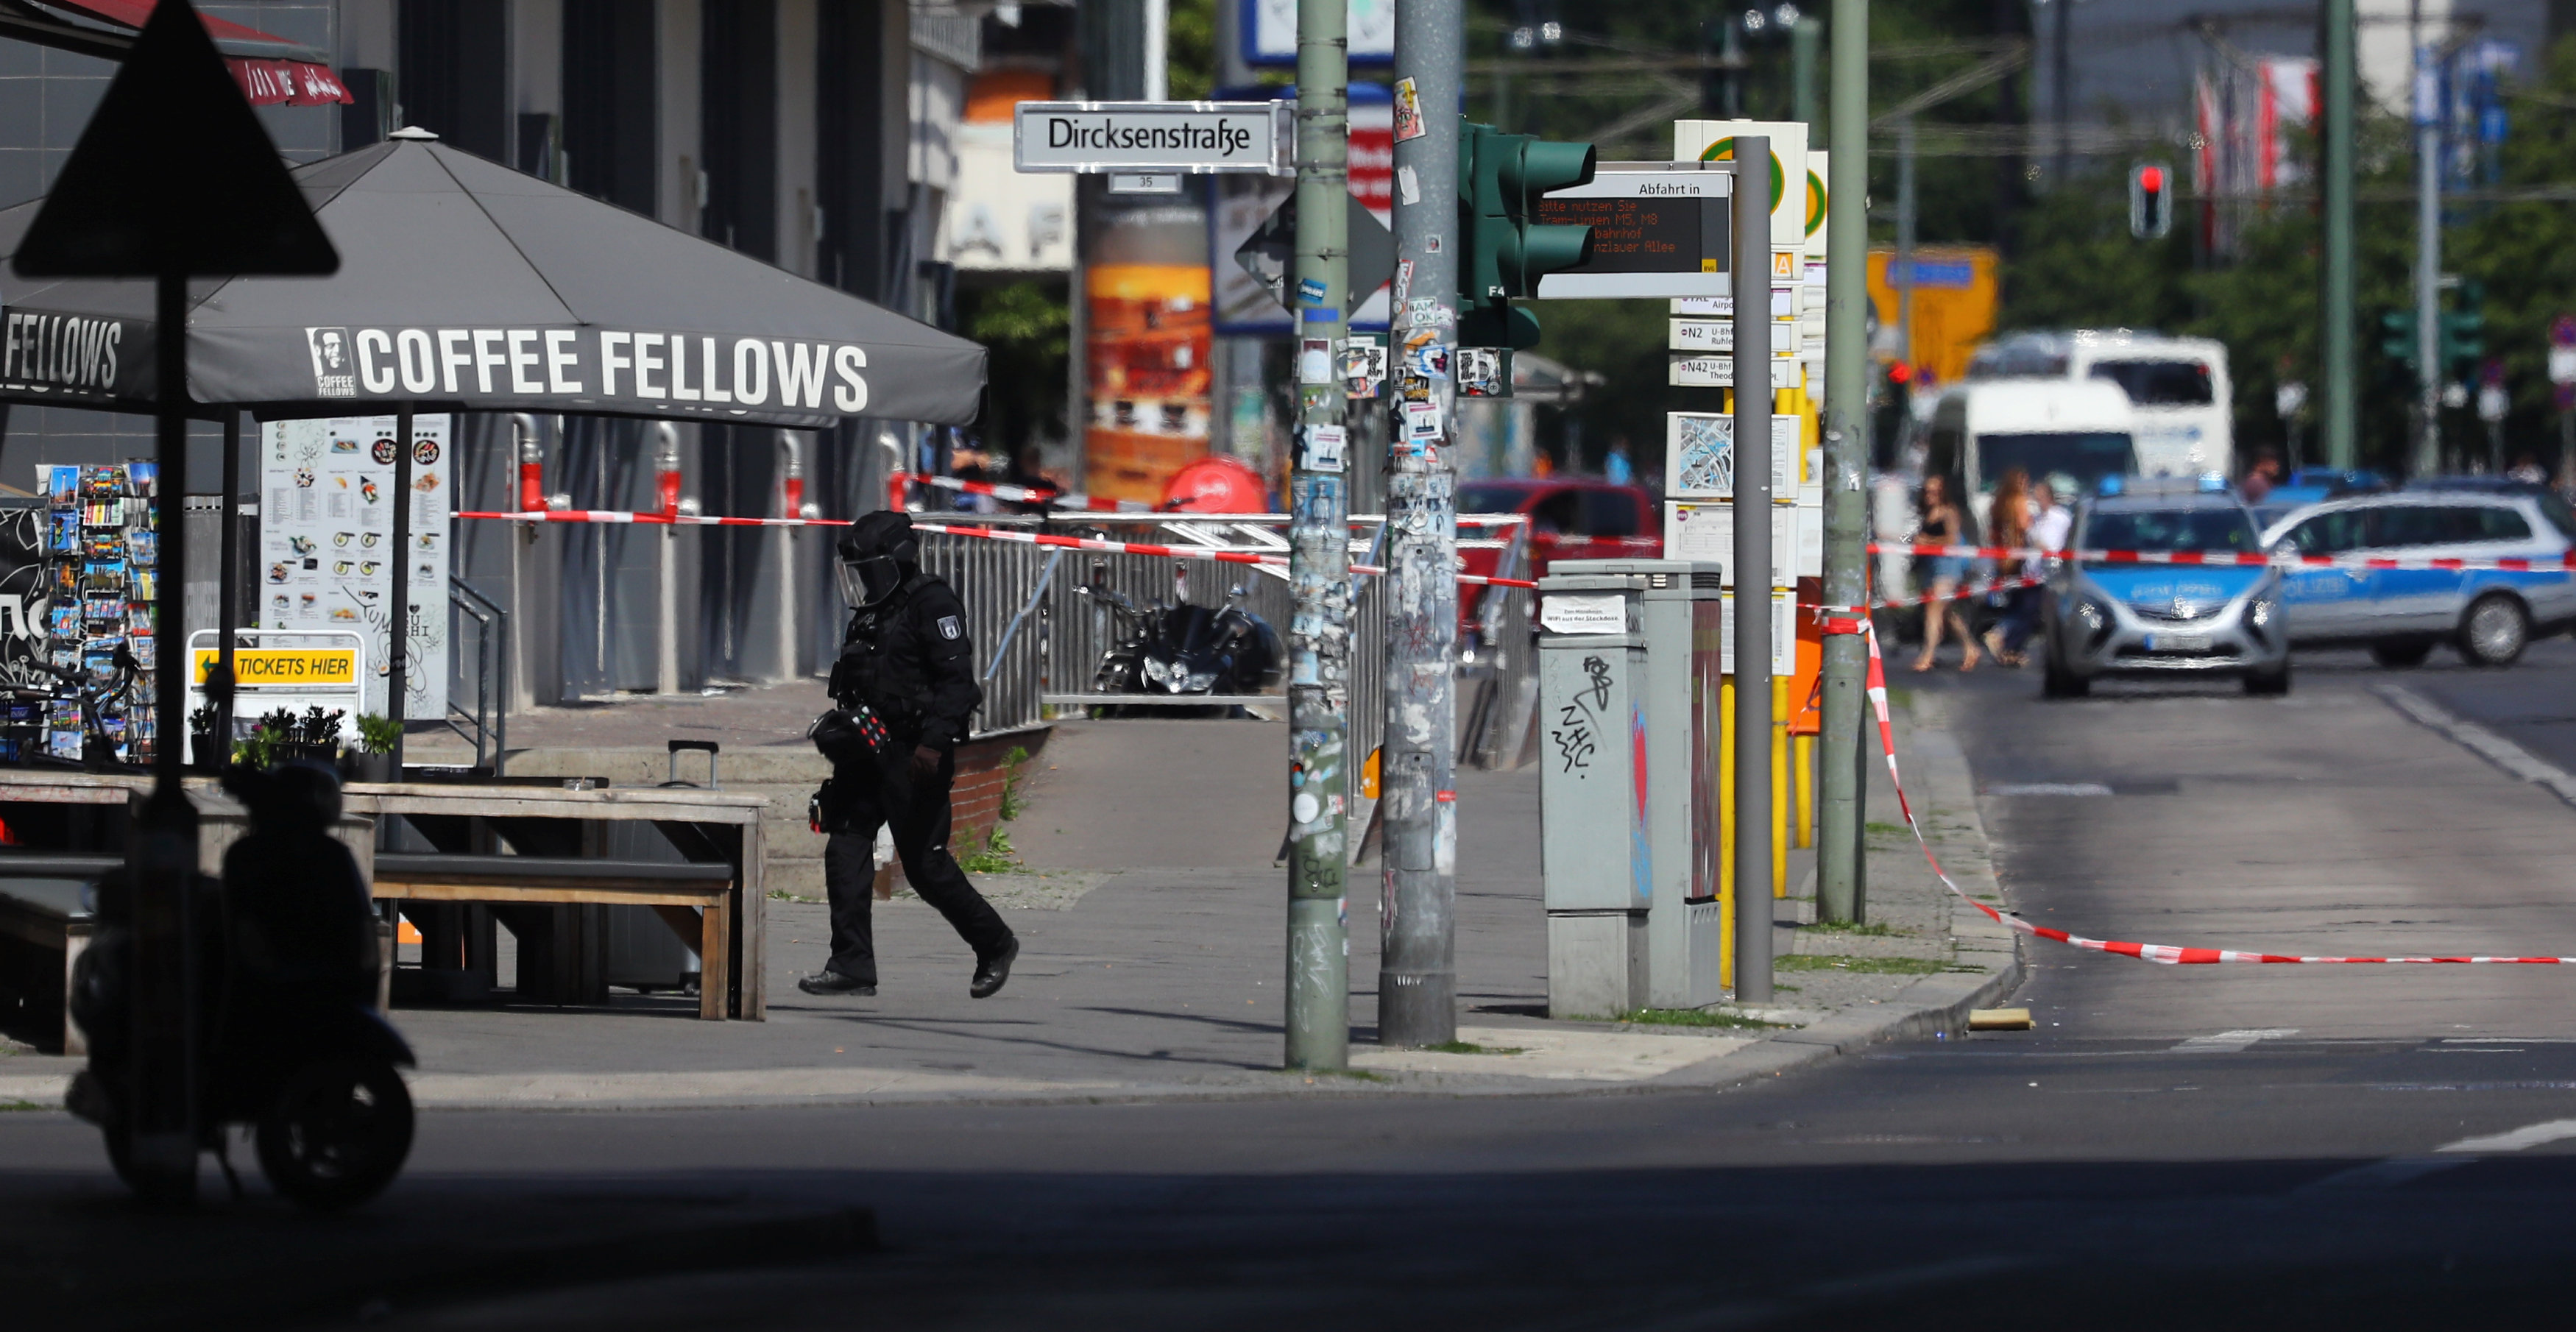 Policía de Berlín investiga paquete sospechoso en estación de trenes